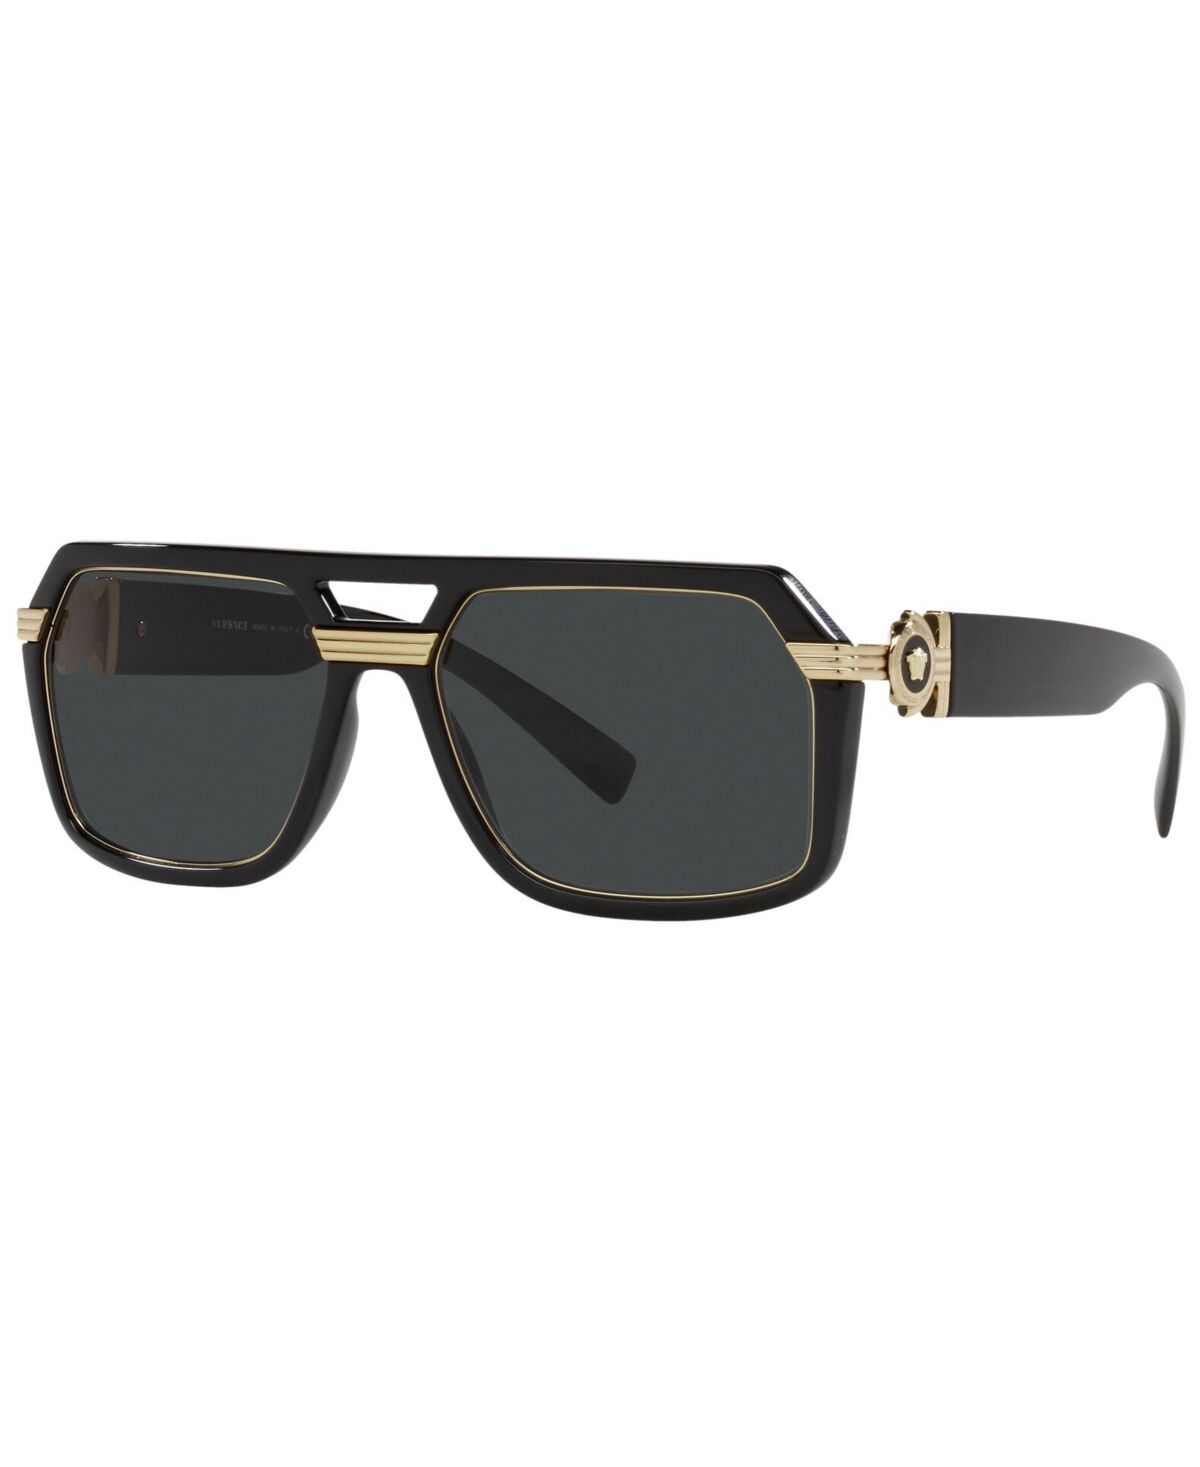 Versace Men's Sunglasses, VE4399 - BLACK/DARK GREY